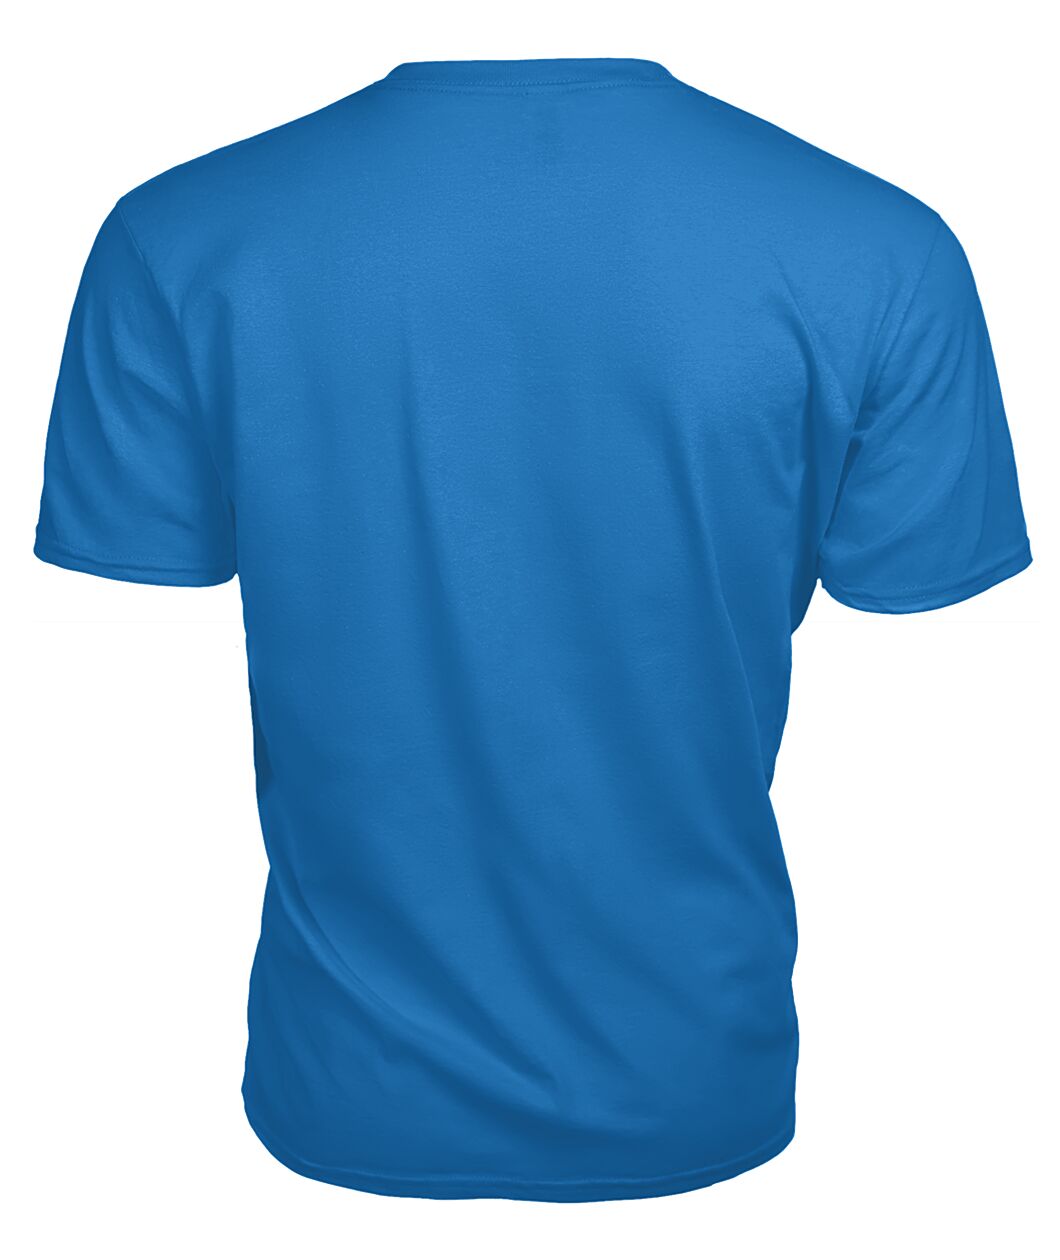 Rodger Tartan 2D T-Shirt